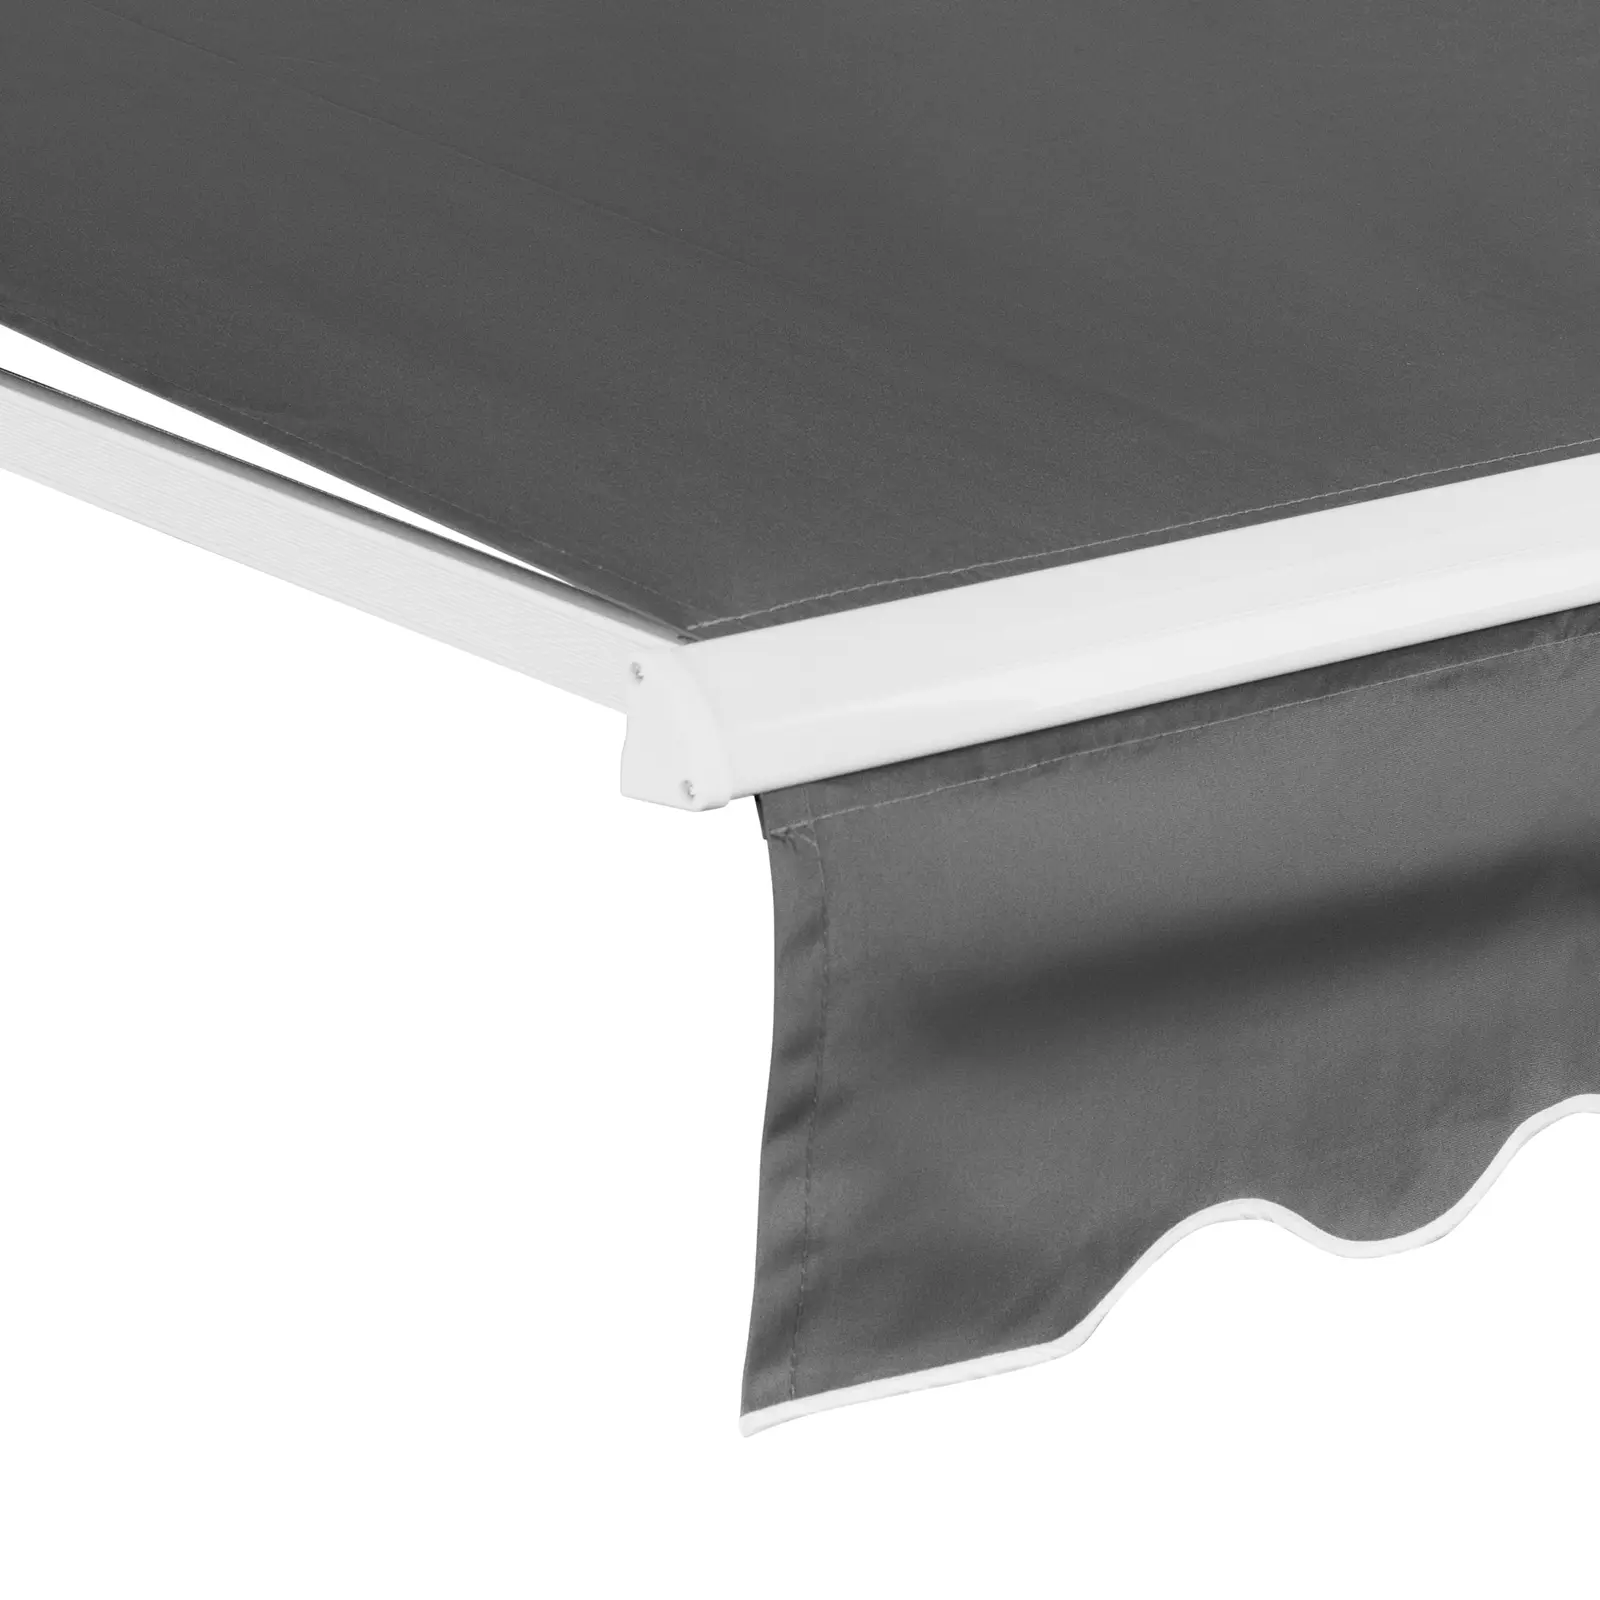 Markise - für Balkon / Terrasse - manuell - 200 x 250 cm - UV-resistent - anthrazitgrau